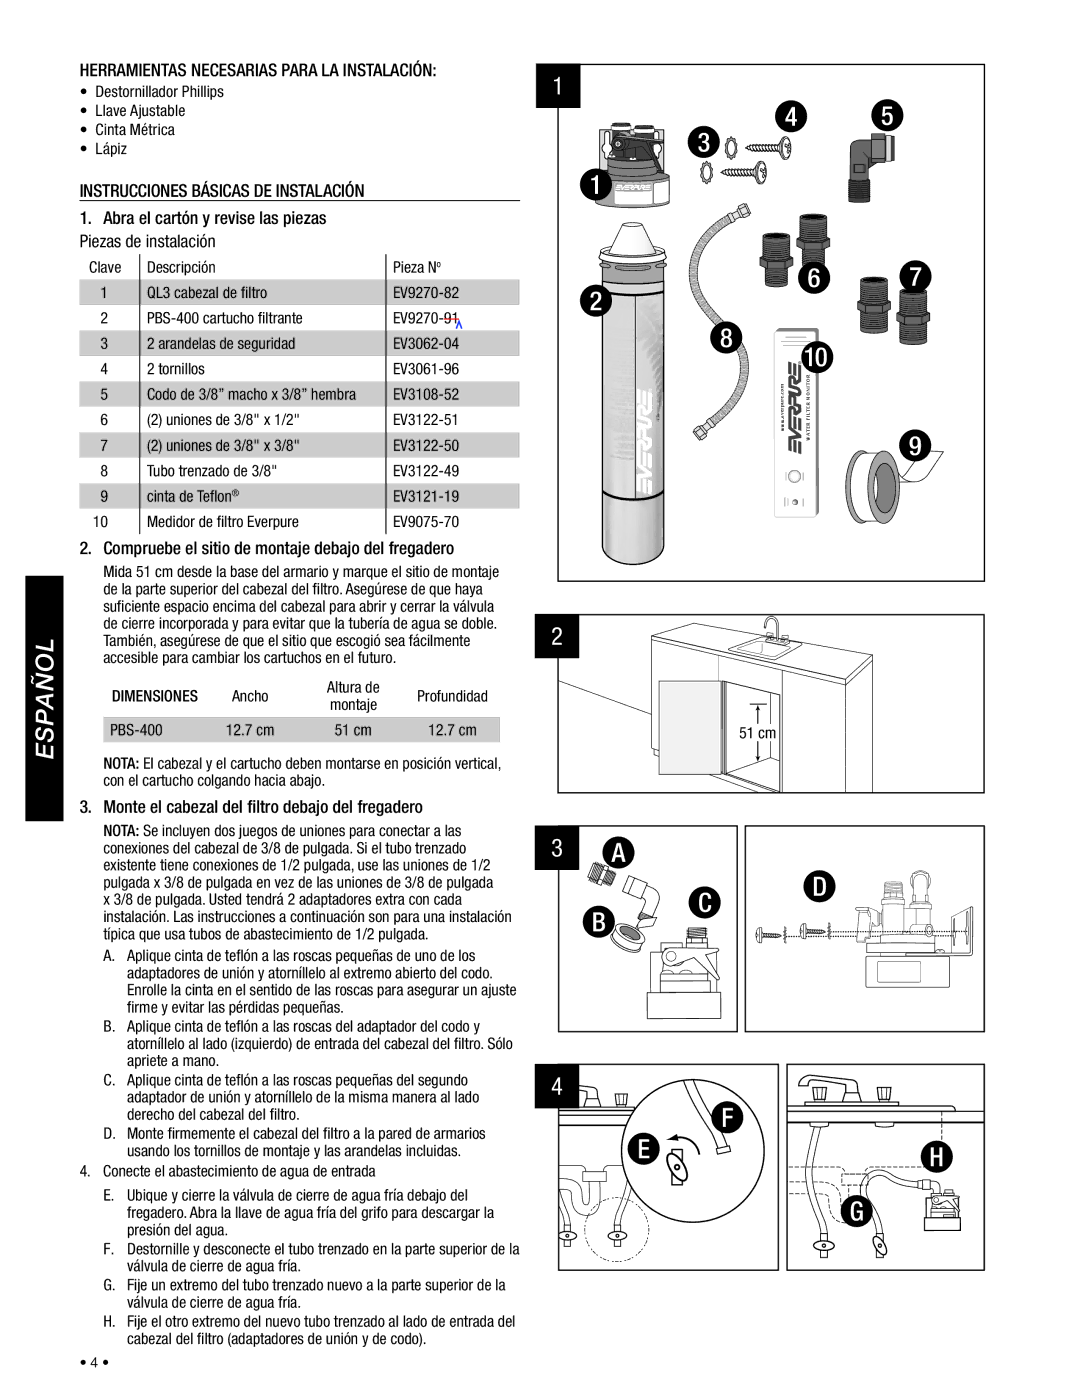 Everpure PBS400 installation instructions Español, Compruebe el sitio de montaje debajo del fregadero, Dimensiones 